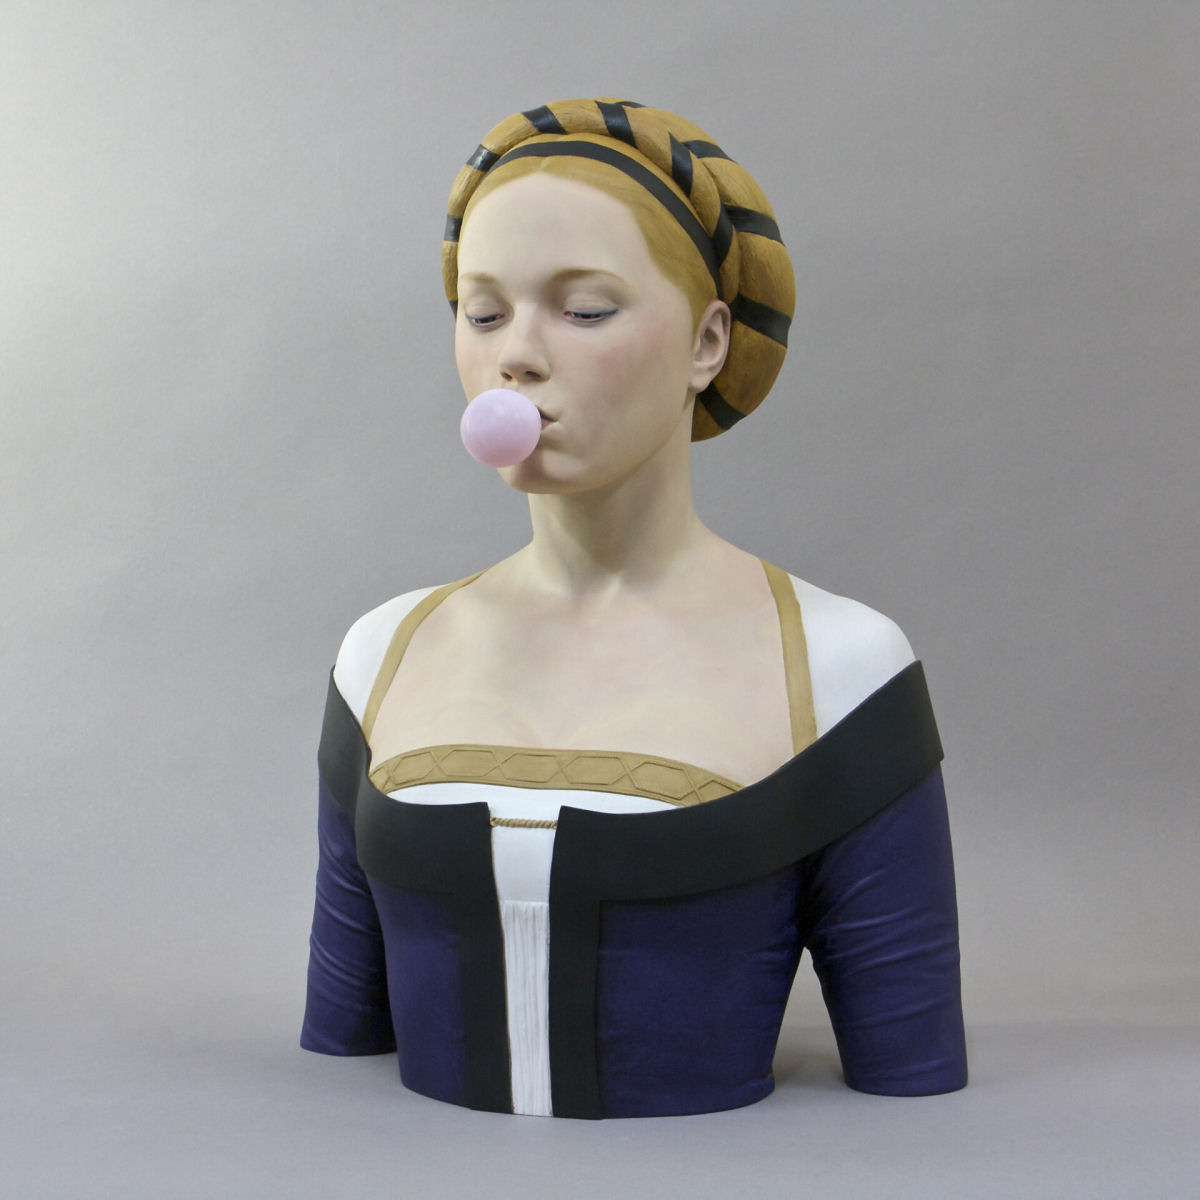 Ousados bustos femininos são esculpidos com um toque contemporâneo e atrevido por um artista espanhol 05